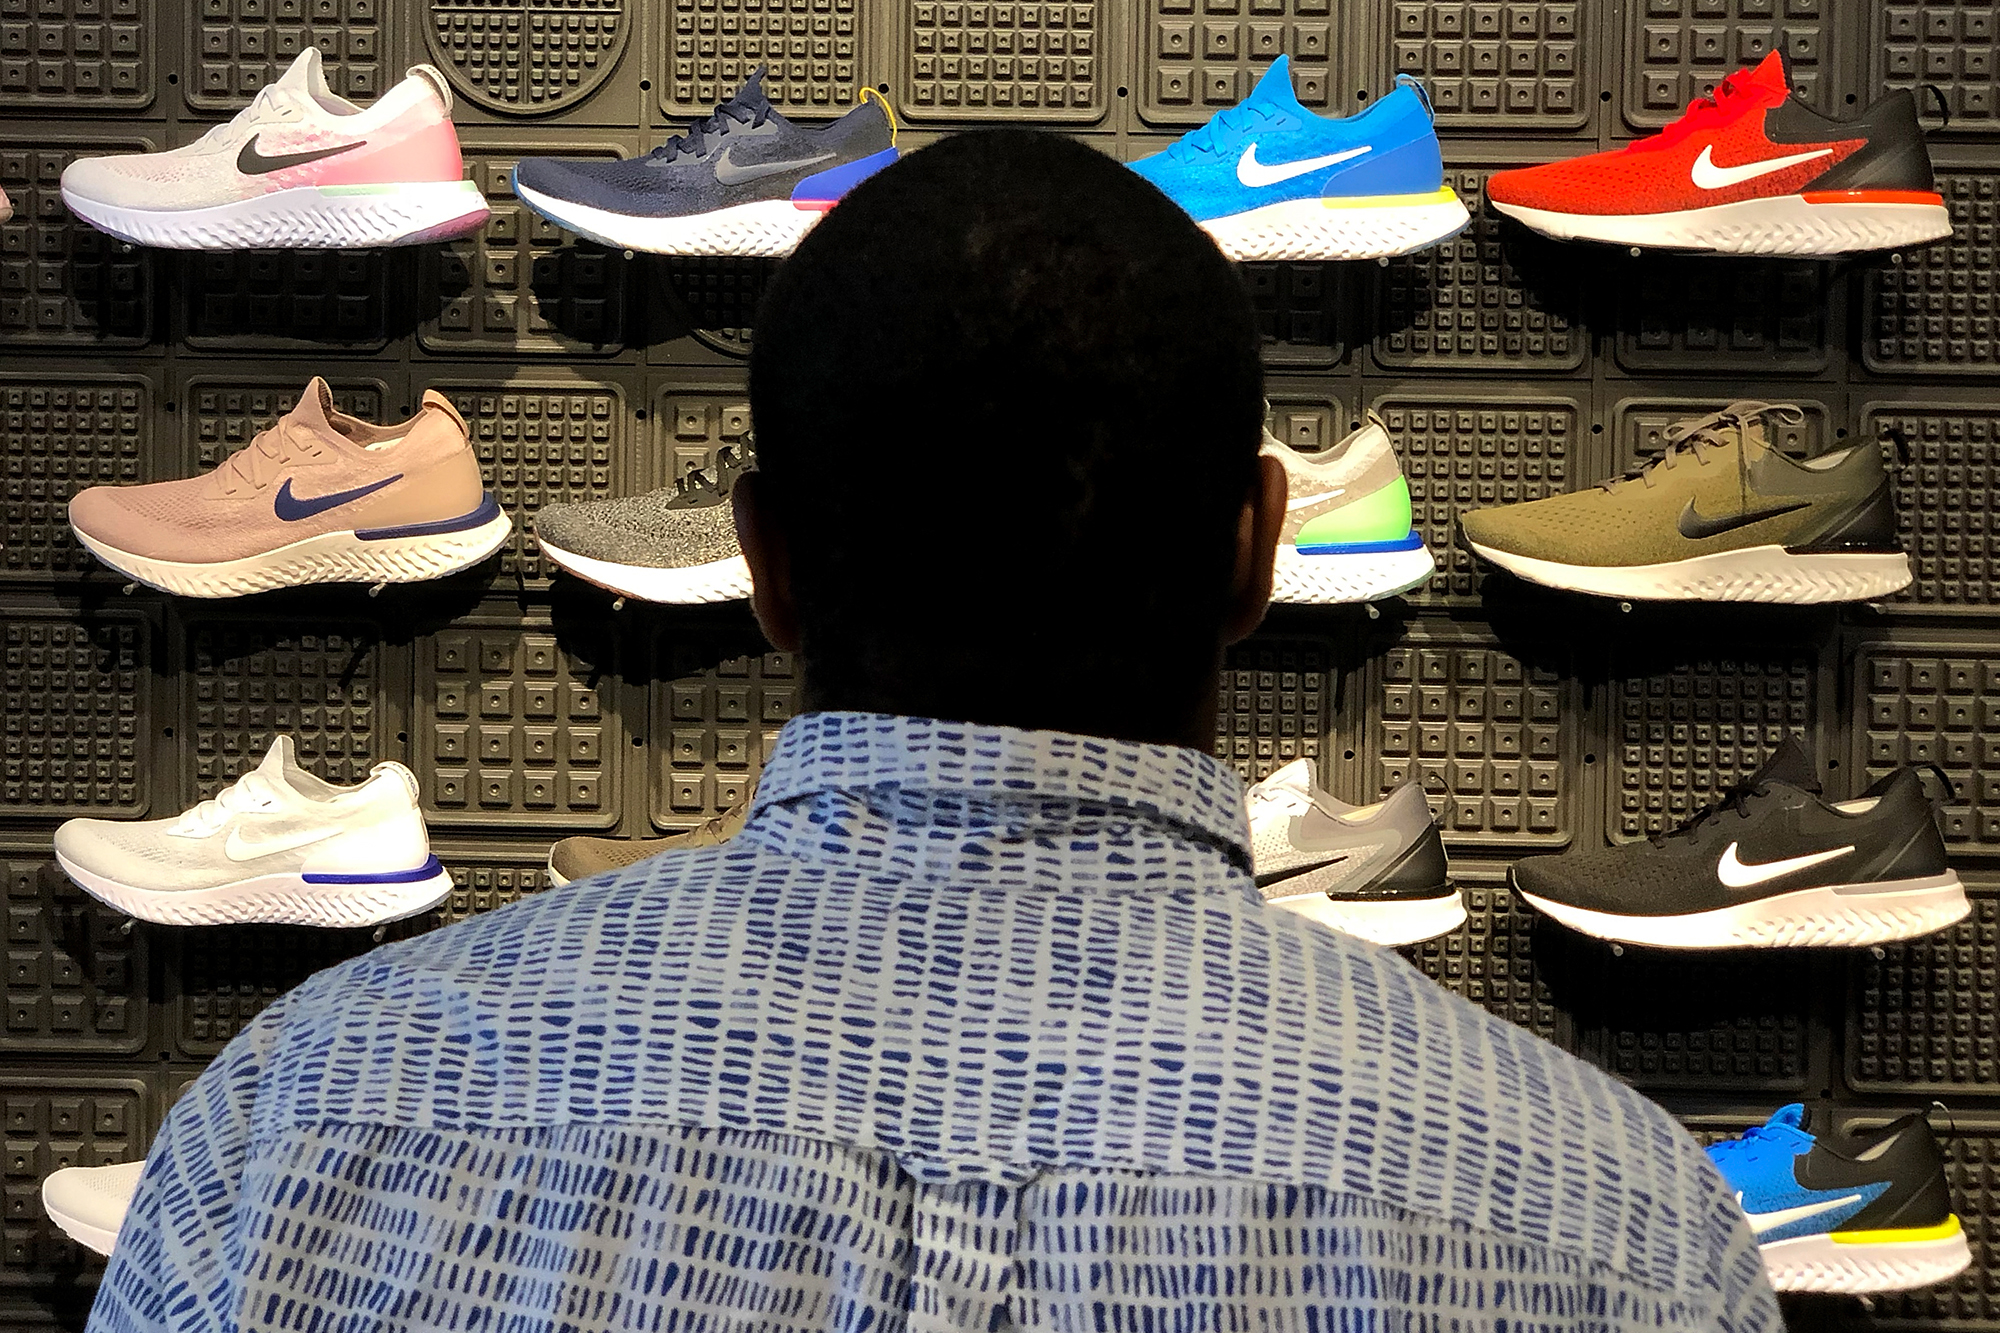 Man looking at window display of various Nike sneakers